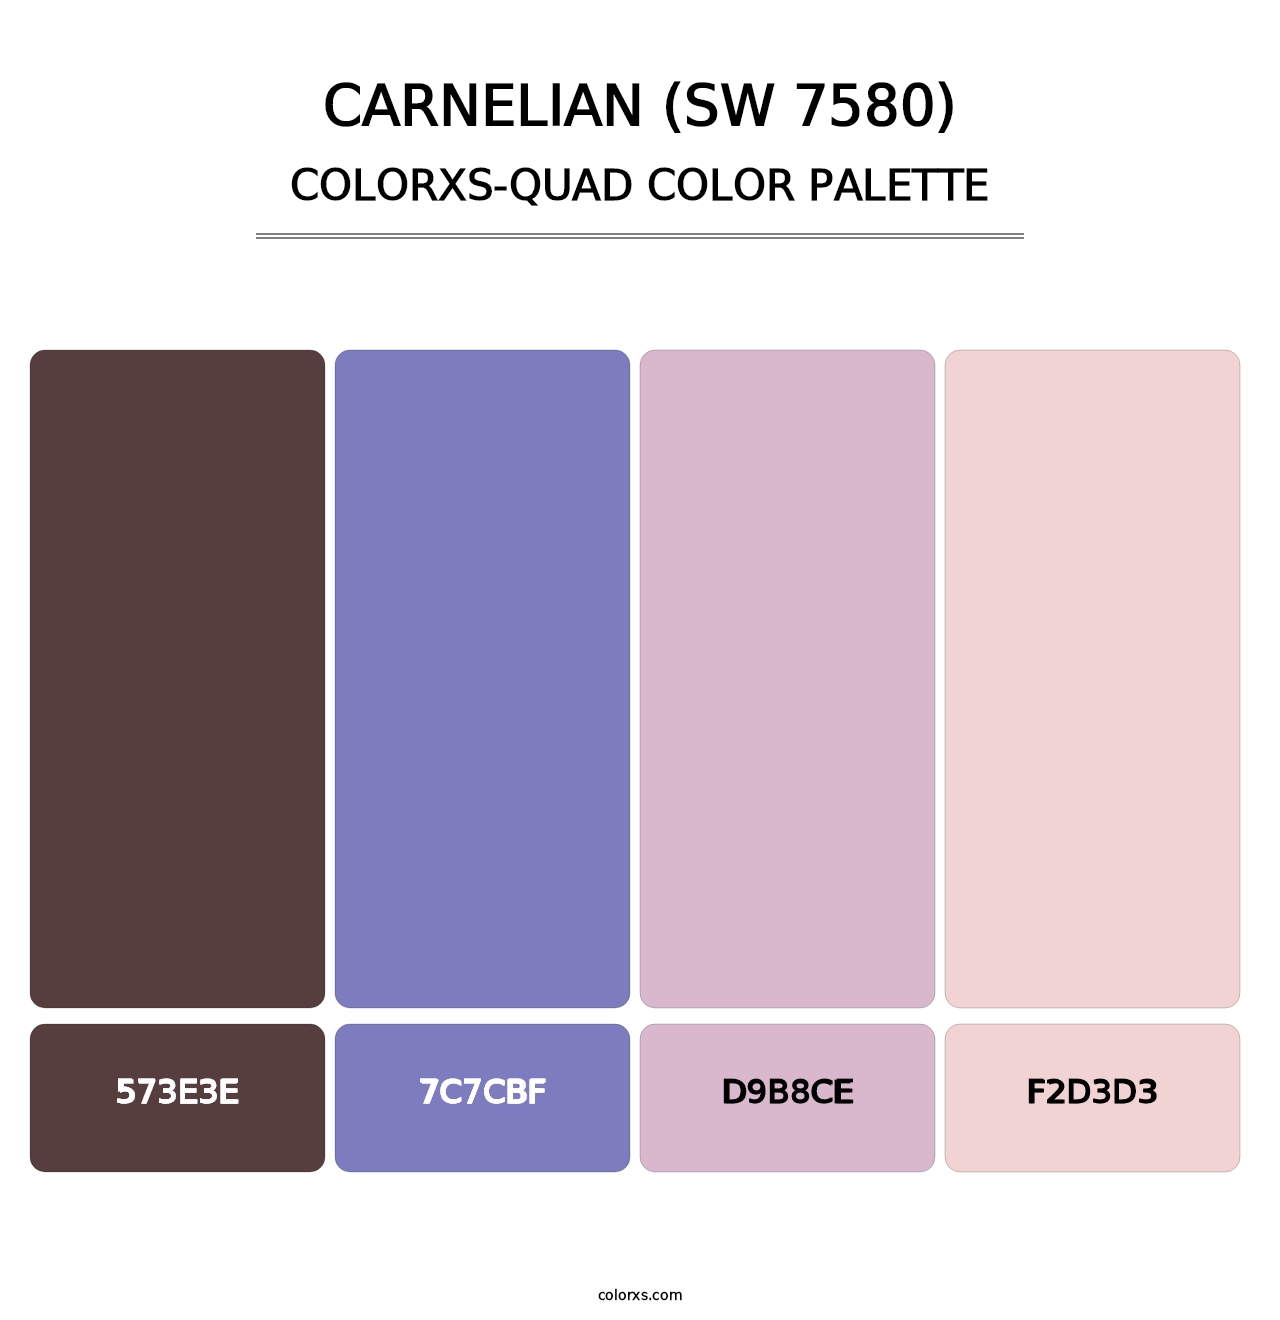 Carnelian (SW 7580) - Colorxs Quad Palette